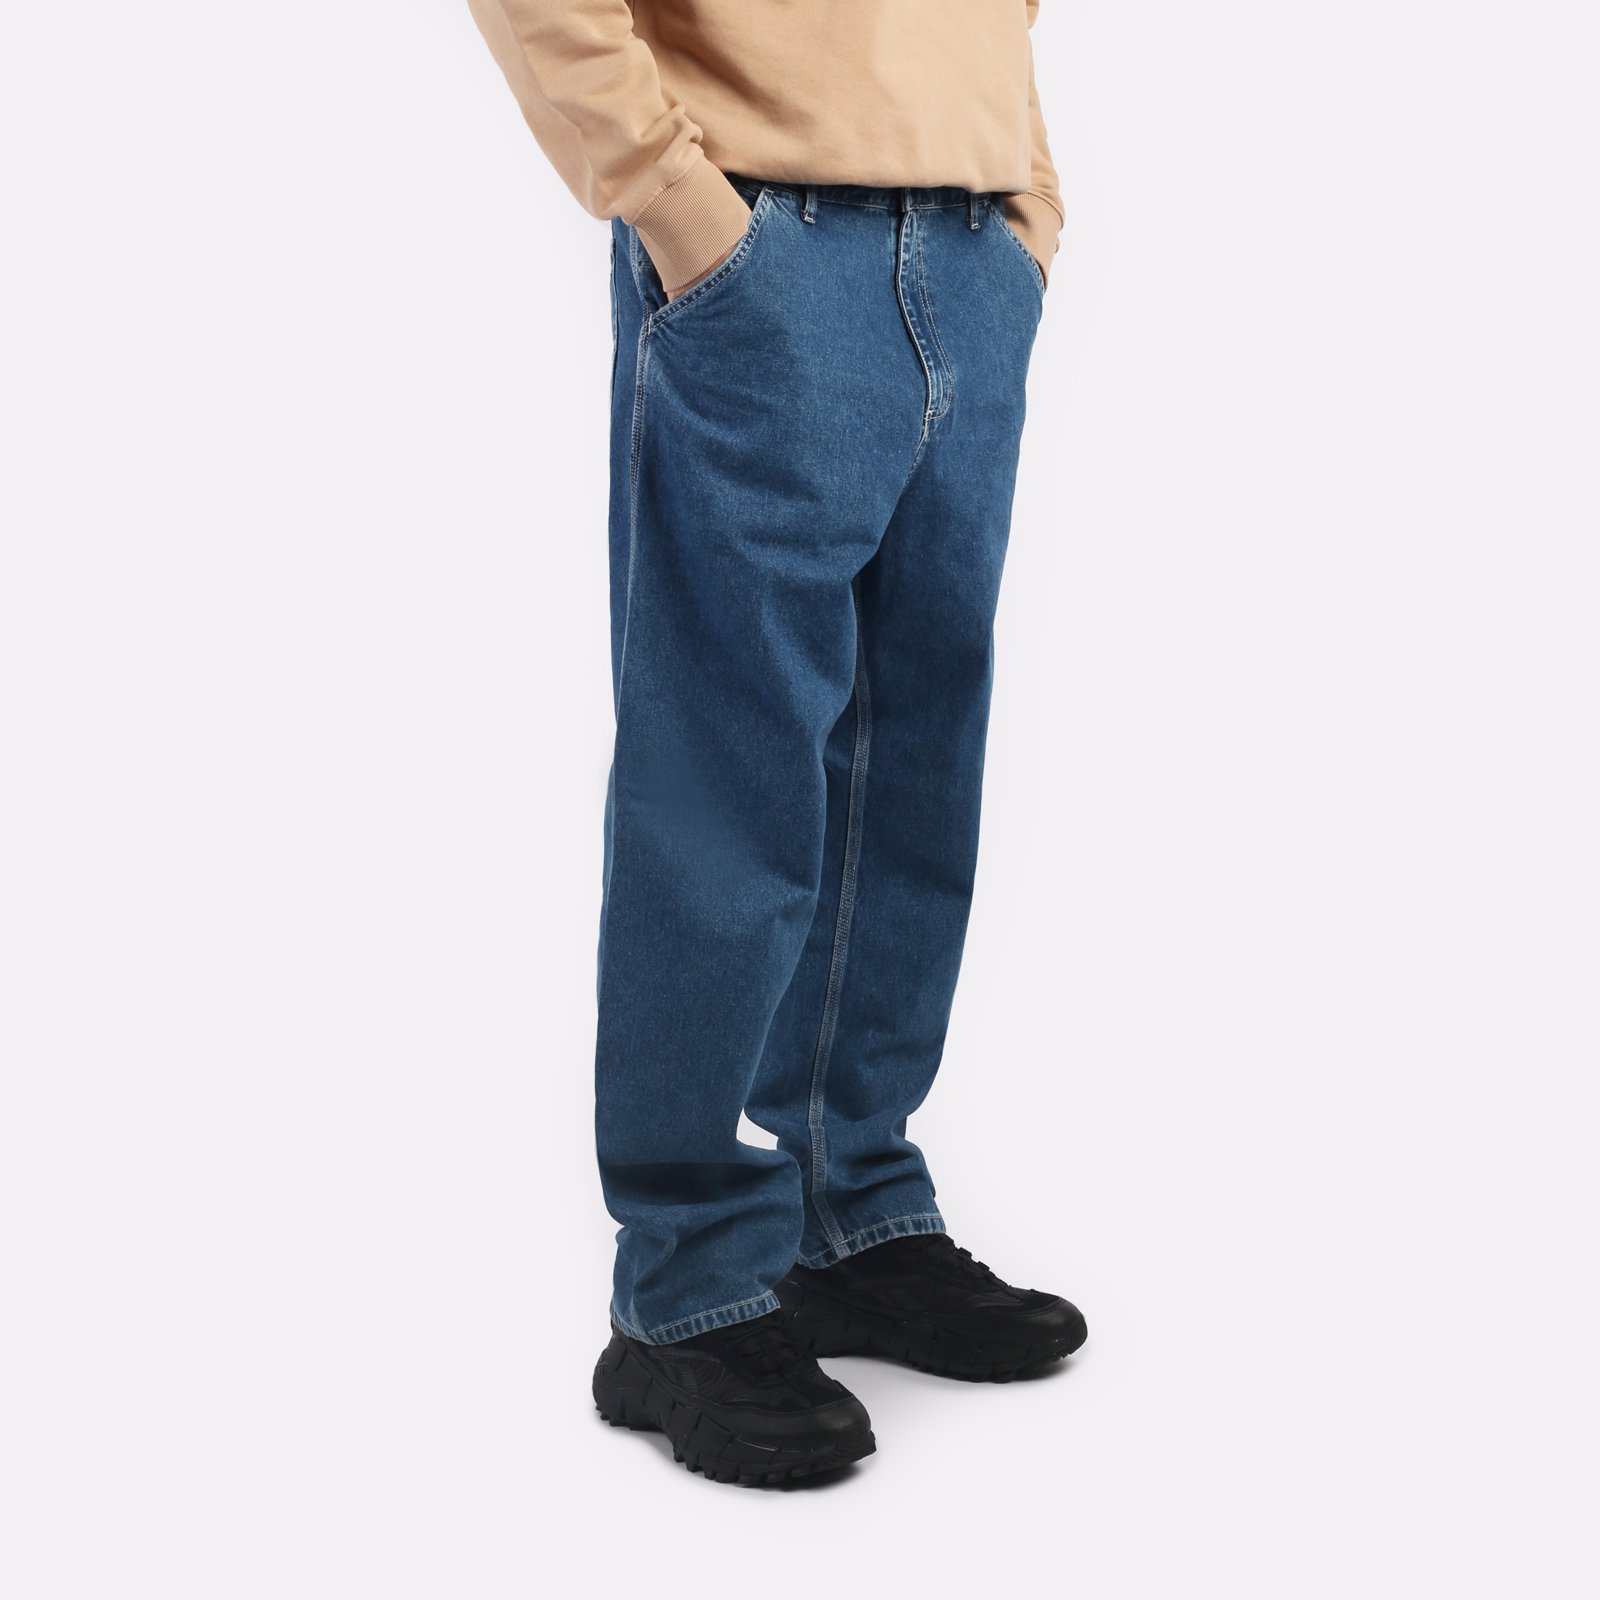 мужские синие джинсы Carhartt WIP Simple Pant I022947-blue - цена, описание, фото 3